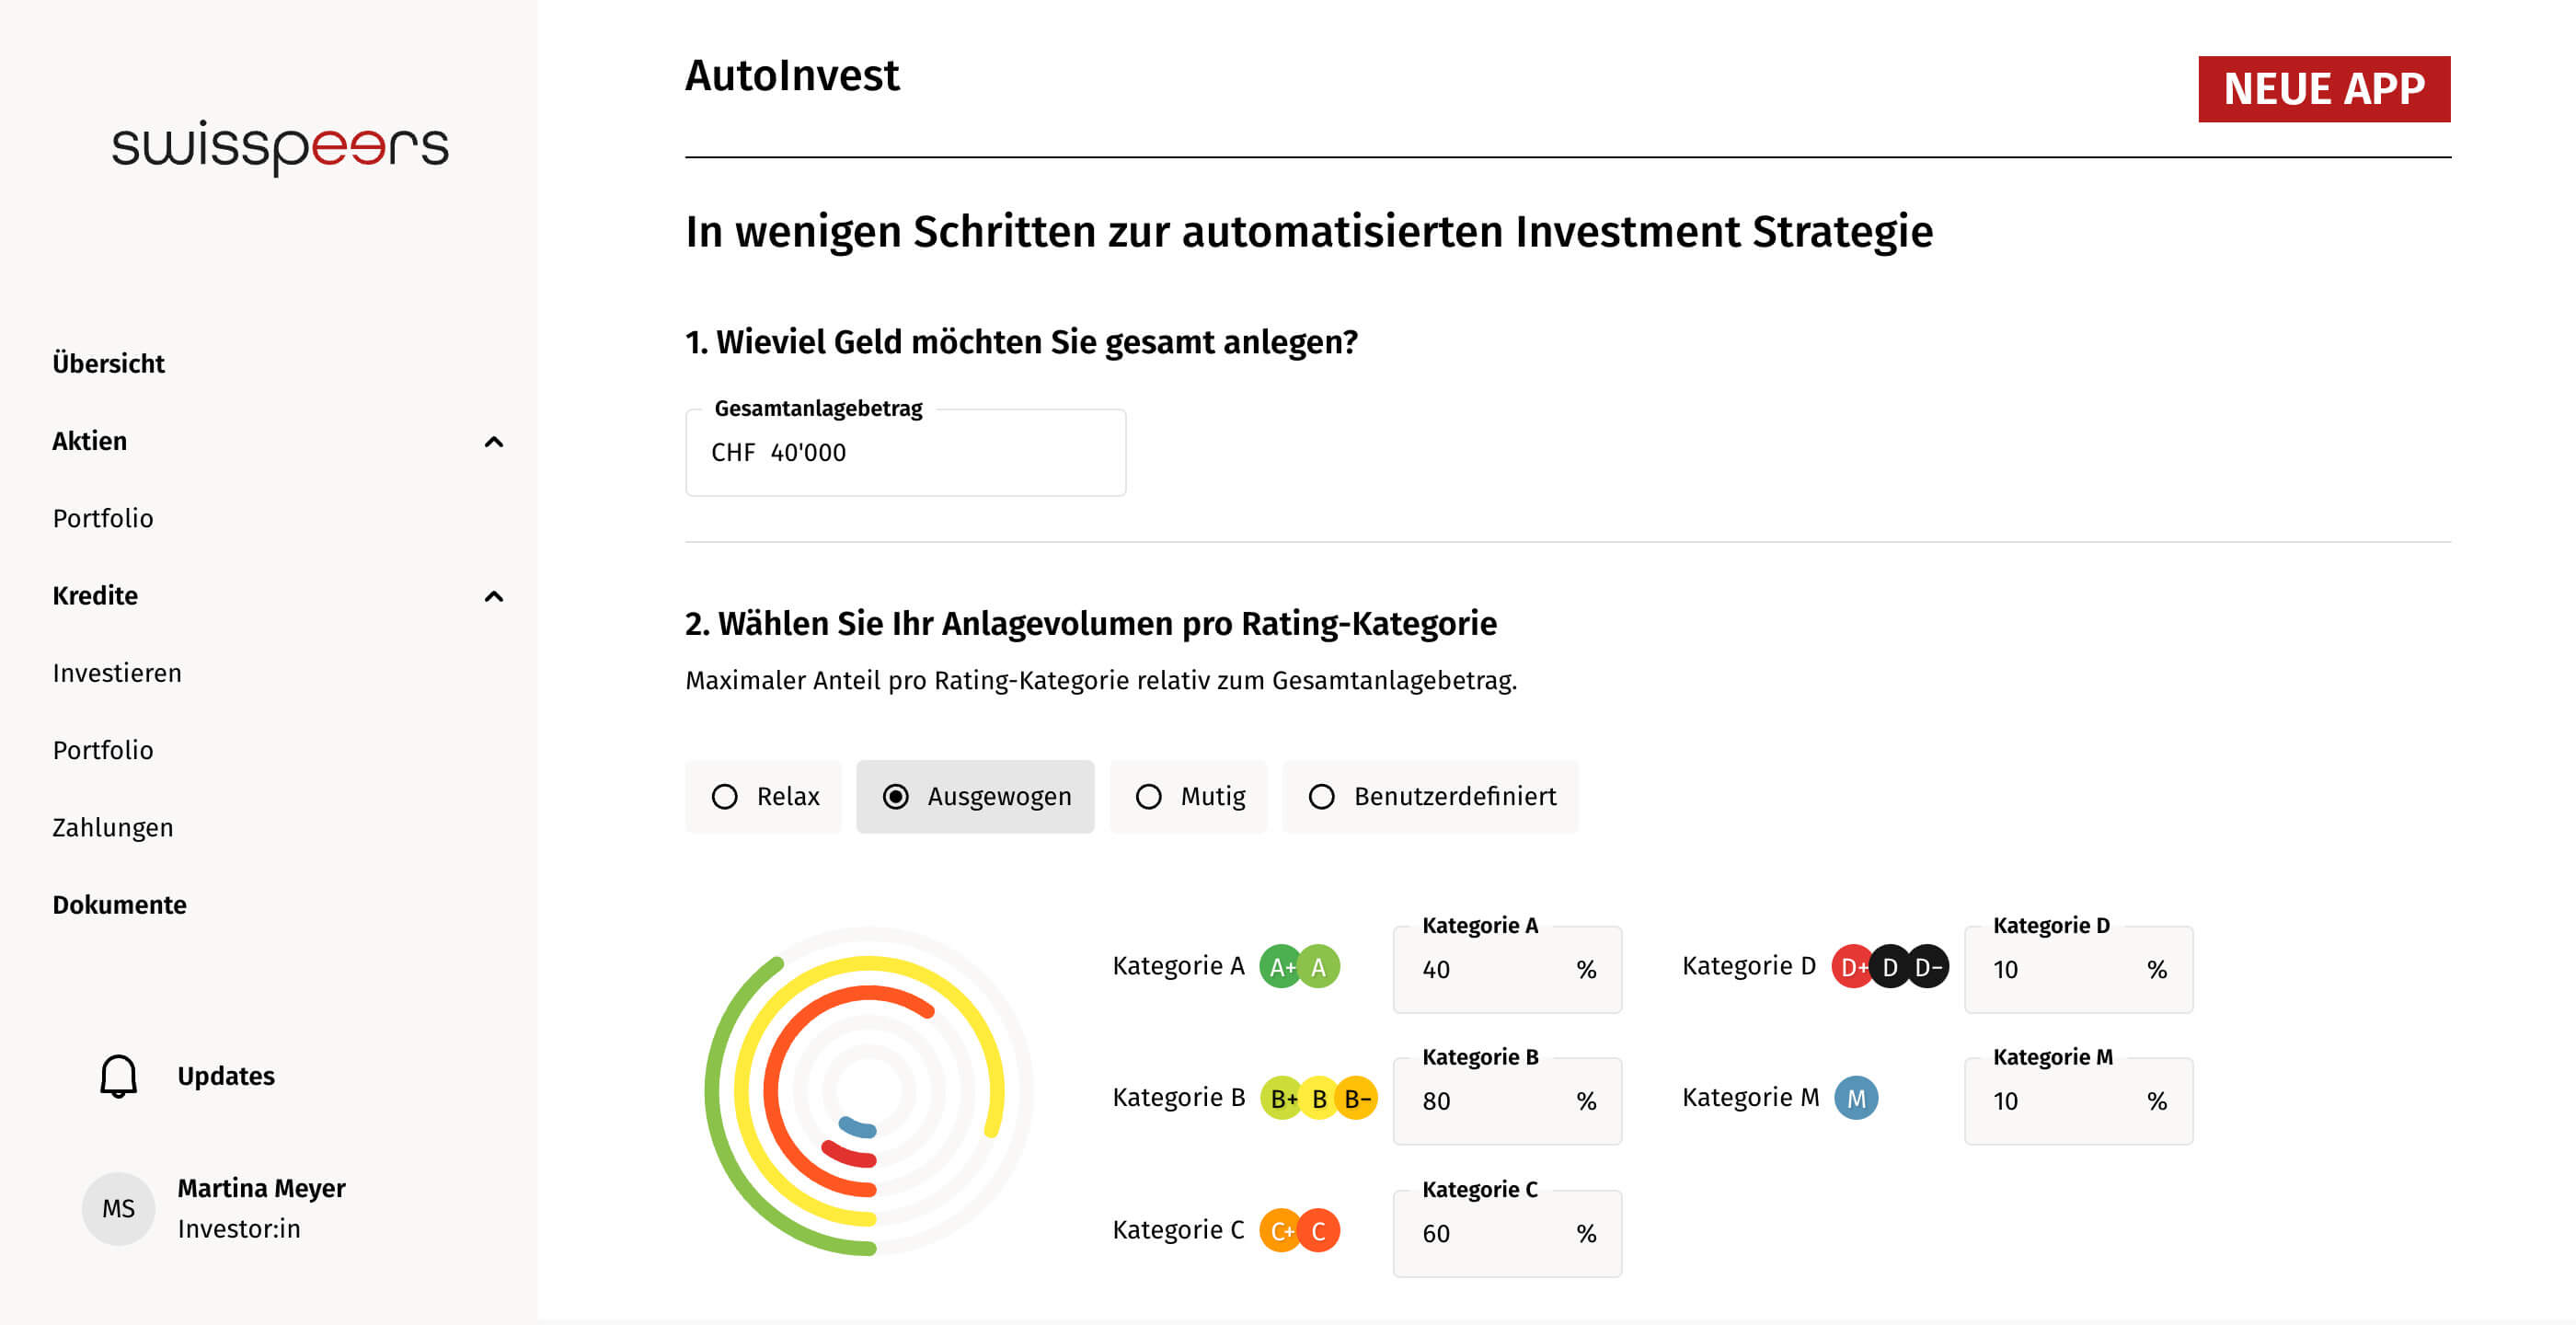 neue_app_autoinvest_